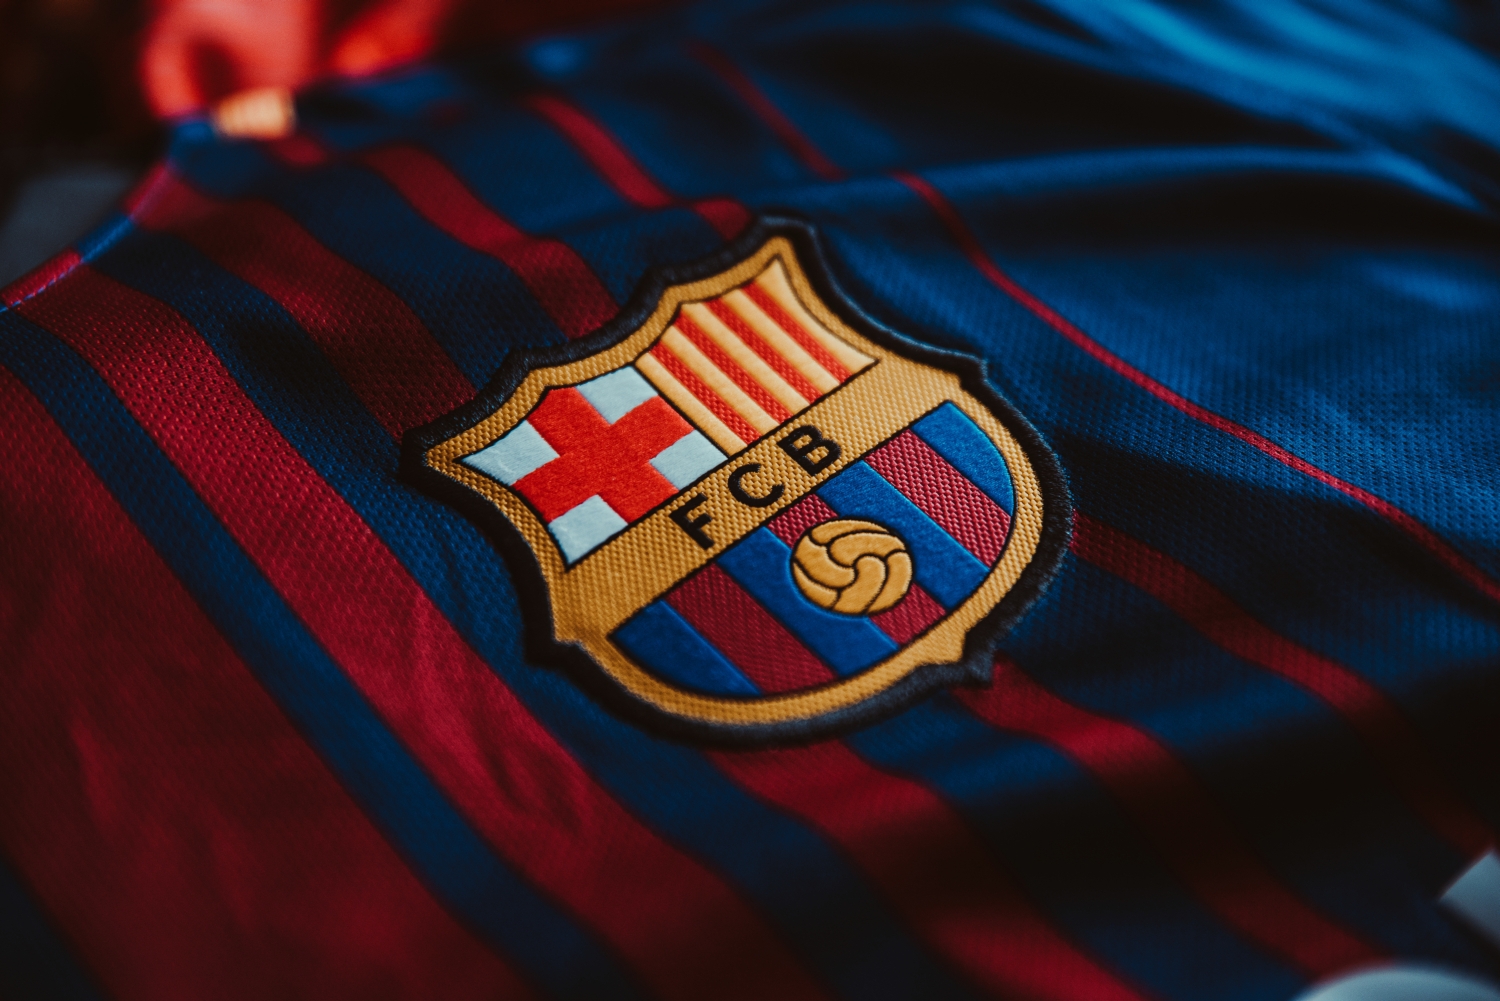 FC Barcelona: Wiadomo, kto zajmie miejsce w kadrze Trincão